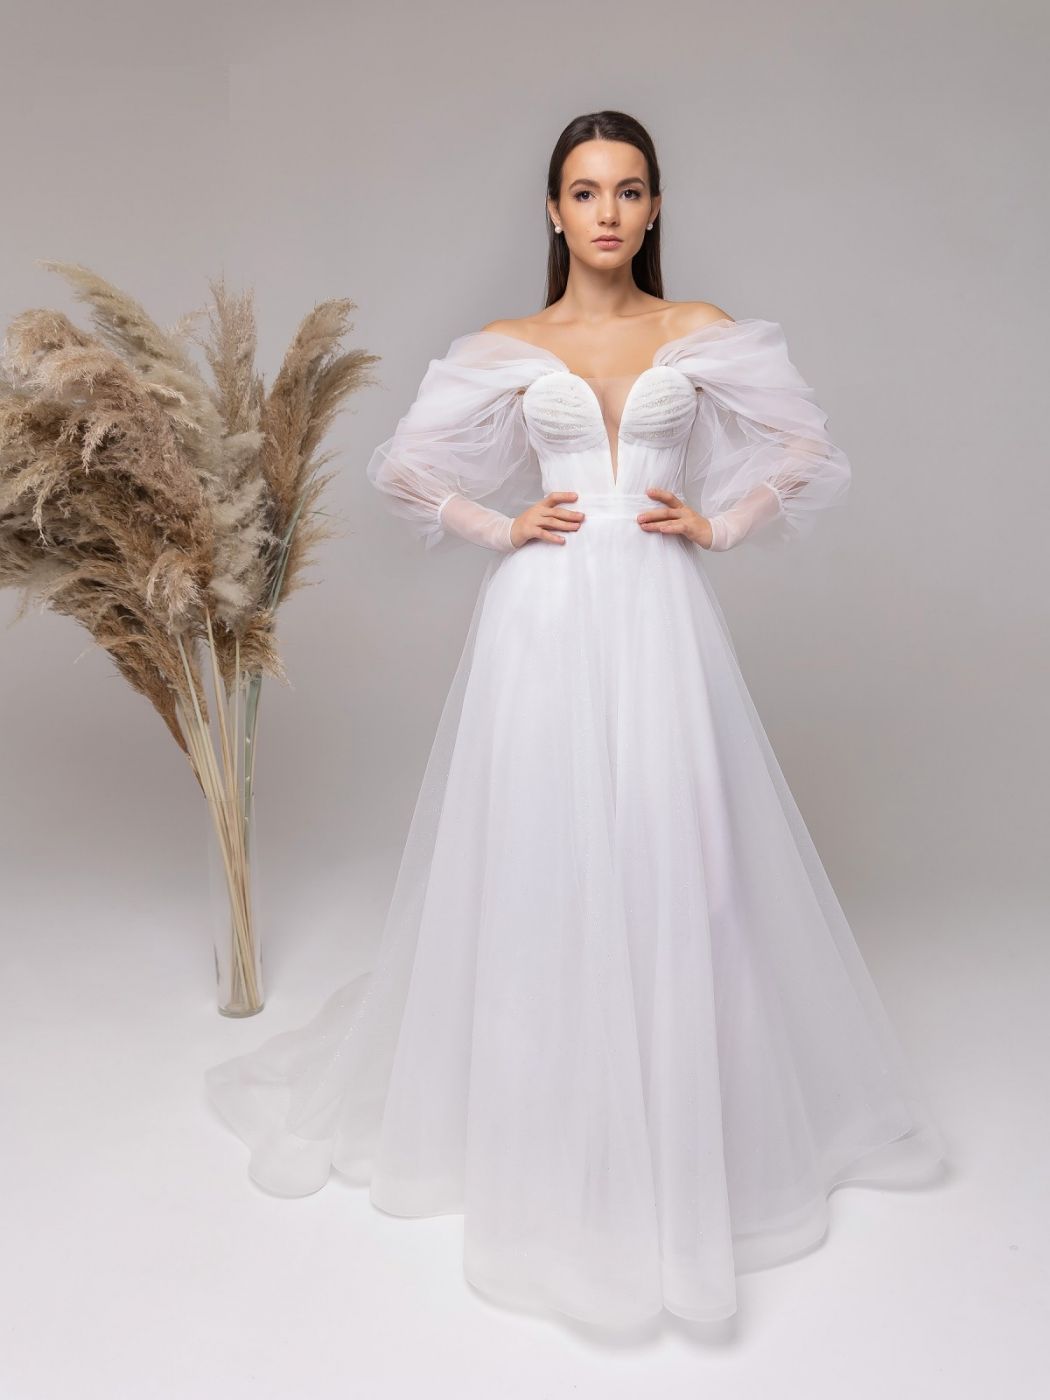 Воздушное свадебное платье Арт. 590